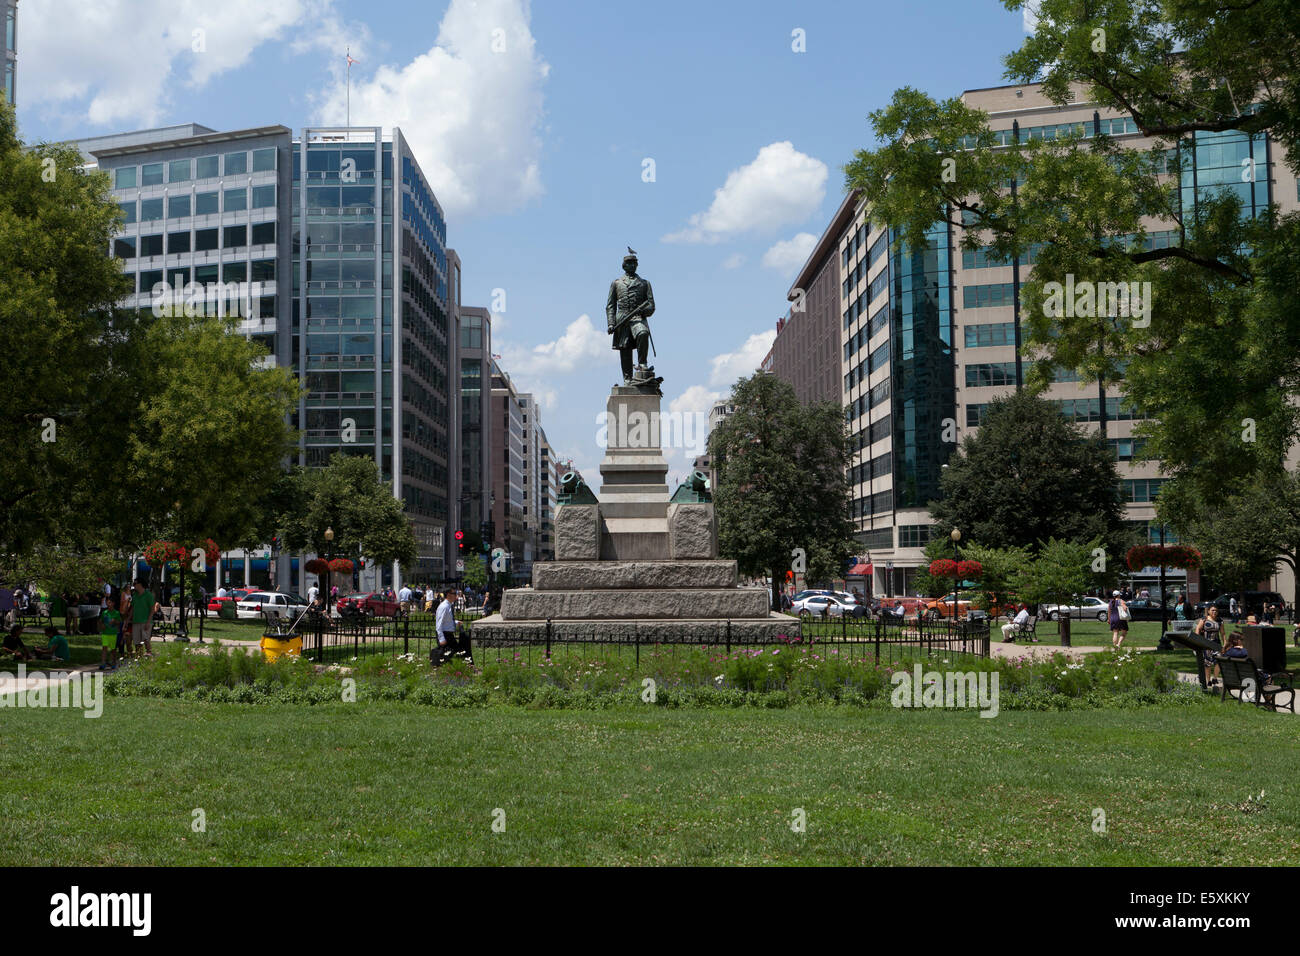 Farragut Square park - Washington, DC USA Stock Photo